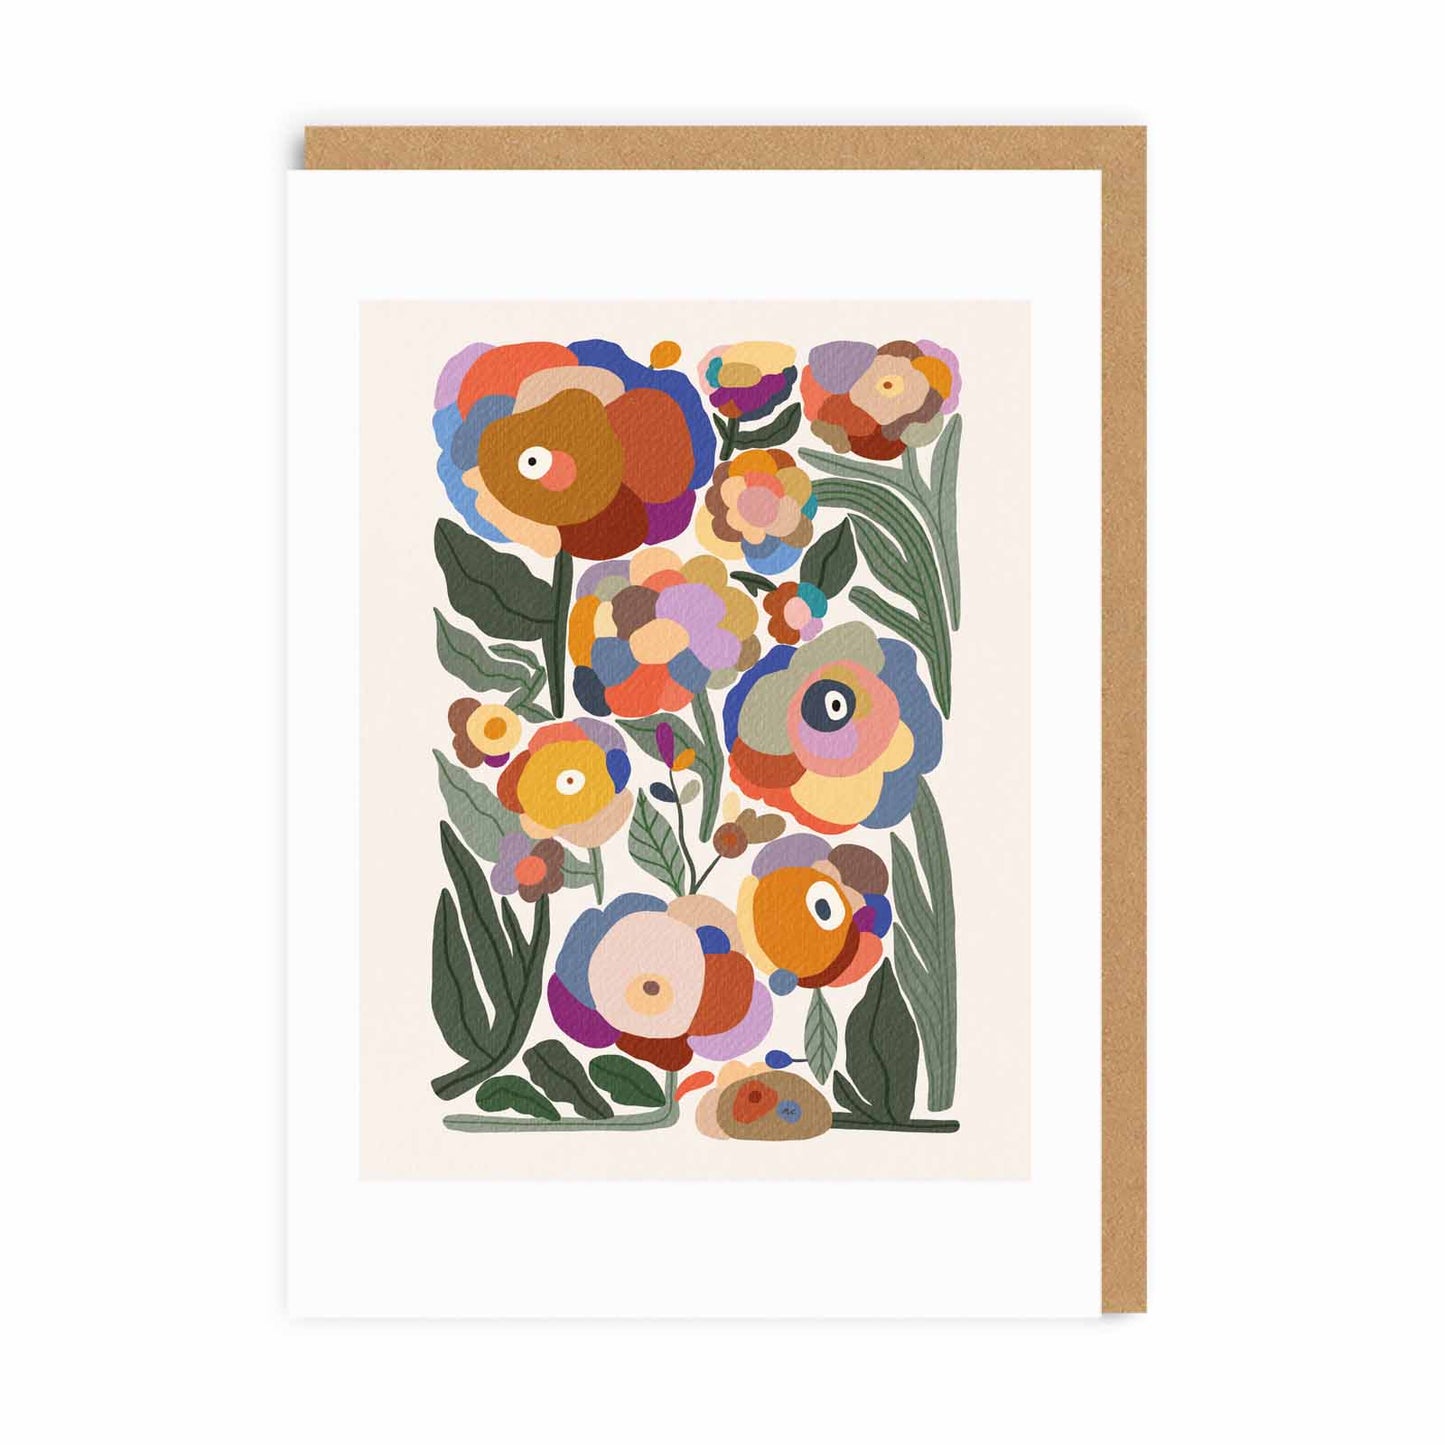 Marina Ester Castaldo | Abstract Floral | A6 Greeting Card